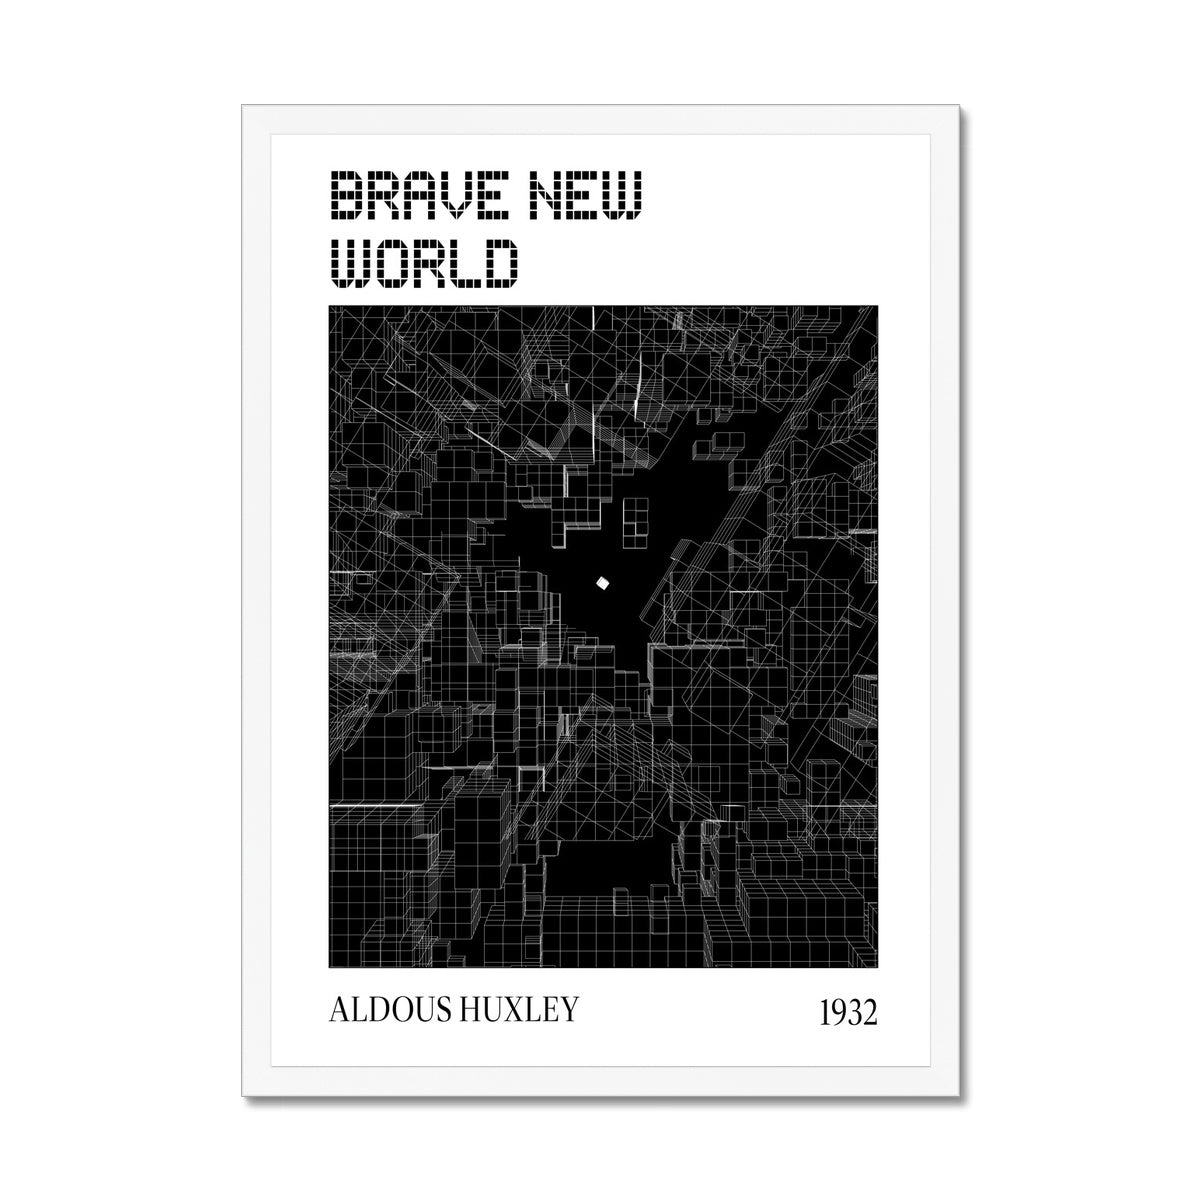 Brave New World "Free" Black and White Framed Print - James Voce // artist